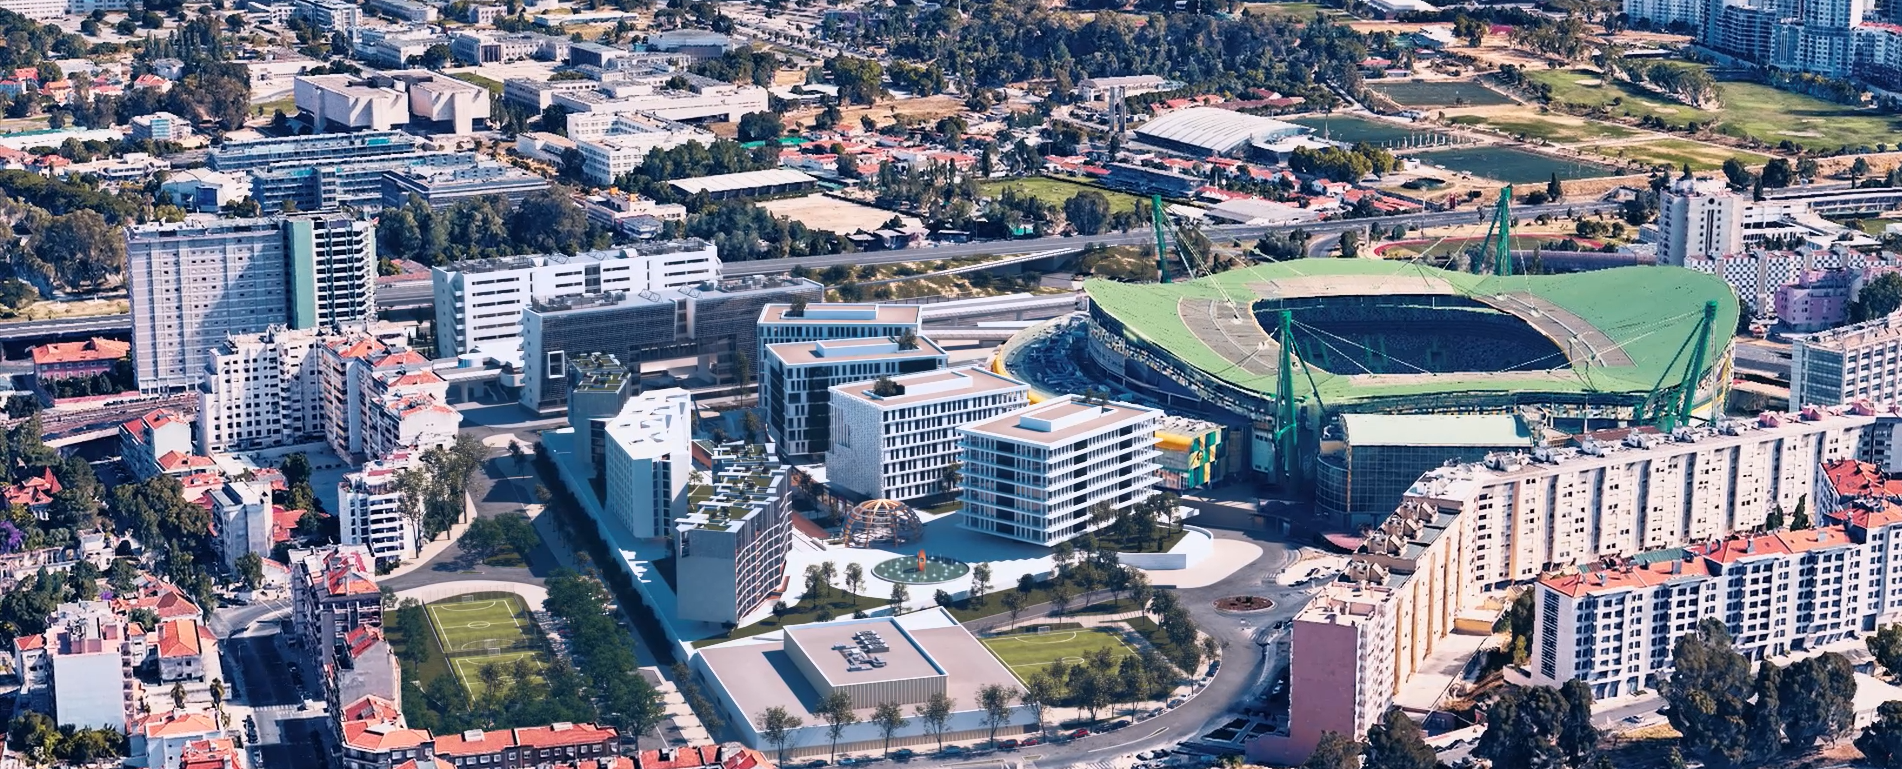 Novo projeto imobiliário junto ao Estádio de Alvalade vai custar 200 milhões euros